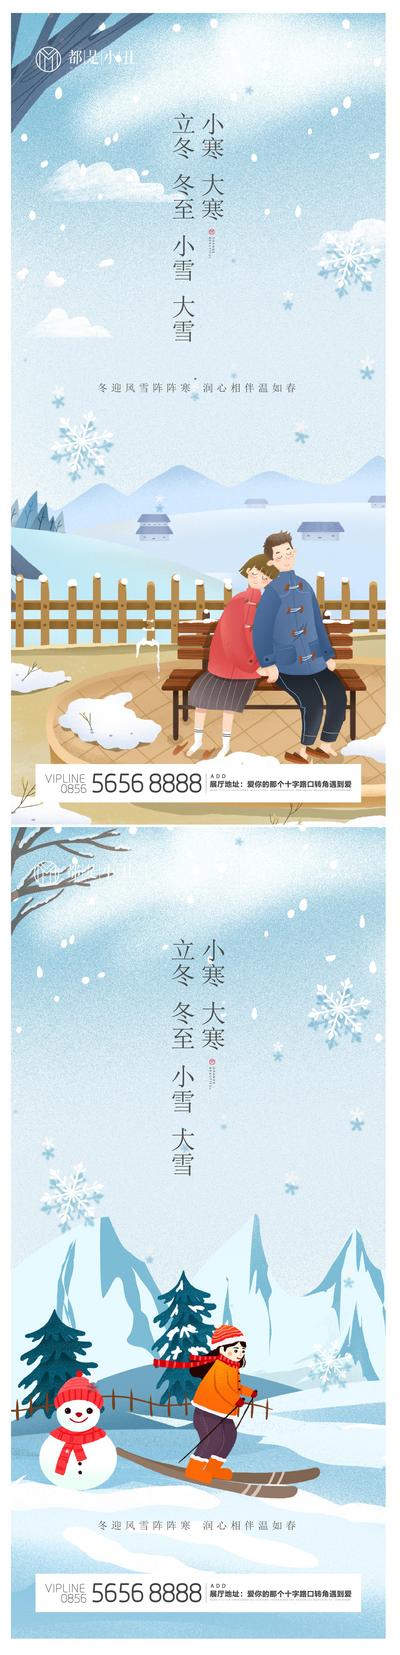 南门网 海报 二十四节气 立冬 冬至 小雪 大雪 小寒 大寒 滑雪 插画 雪景